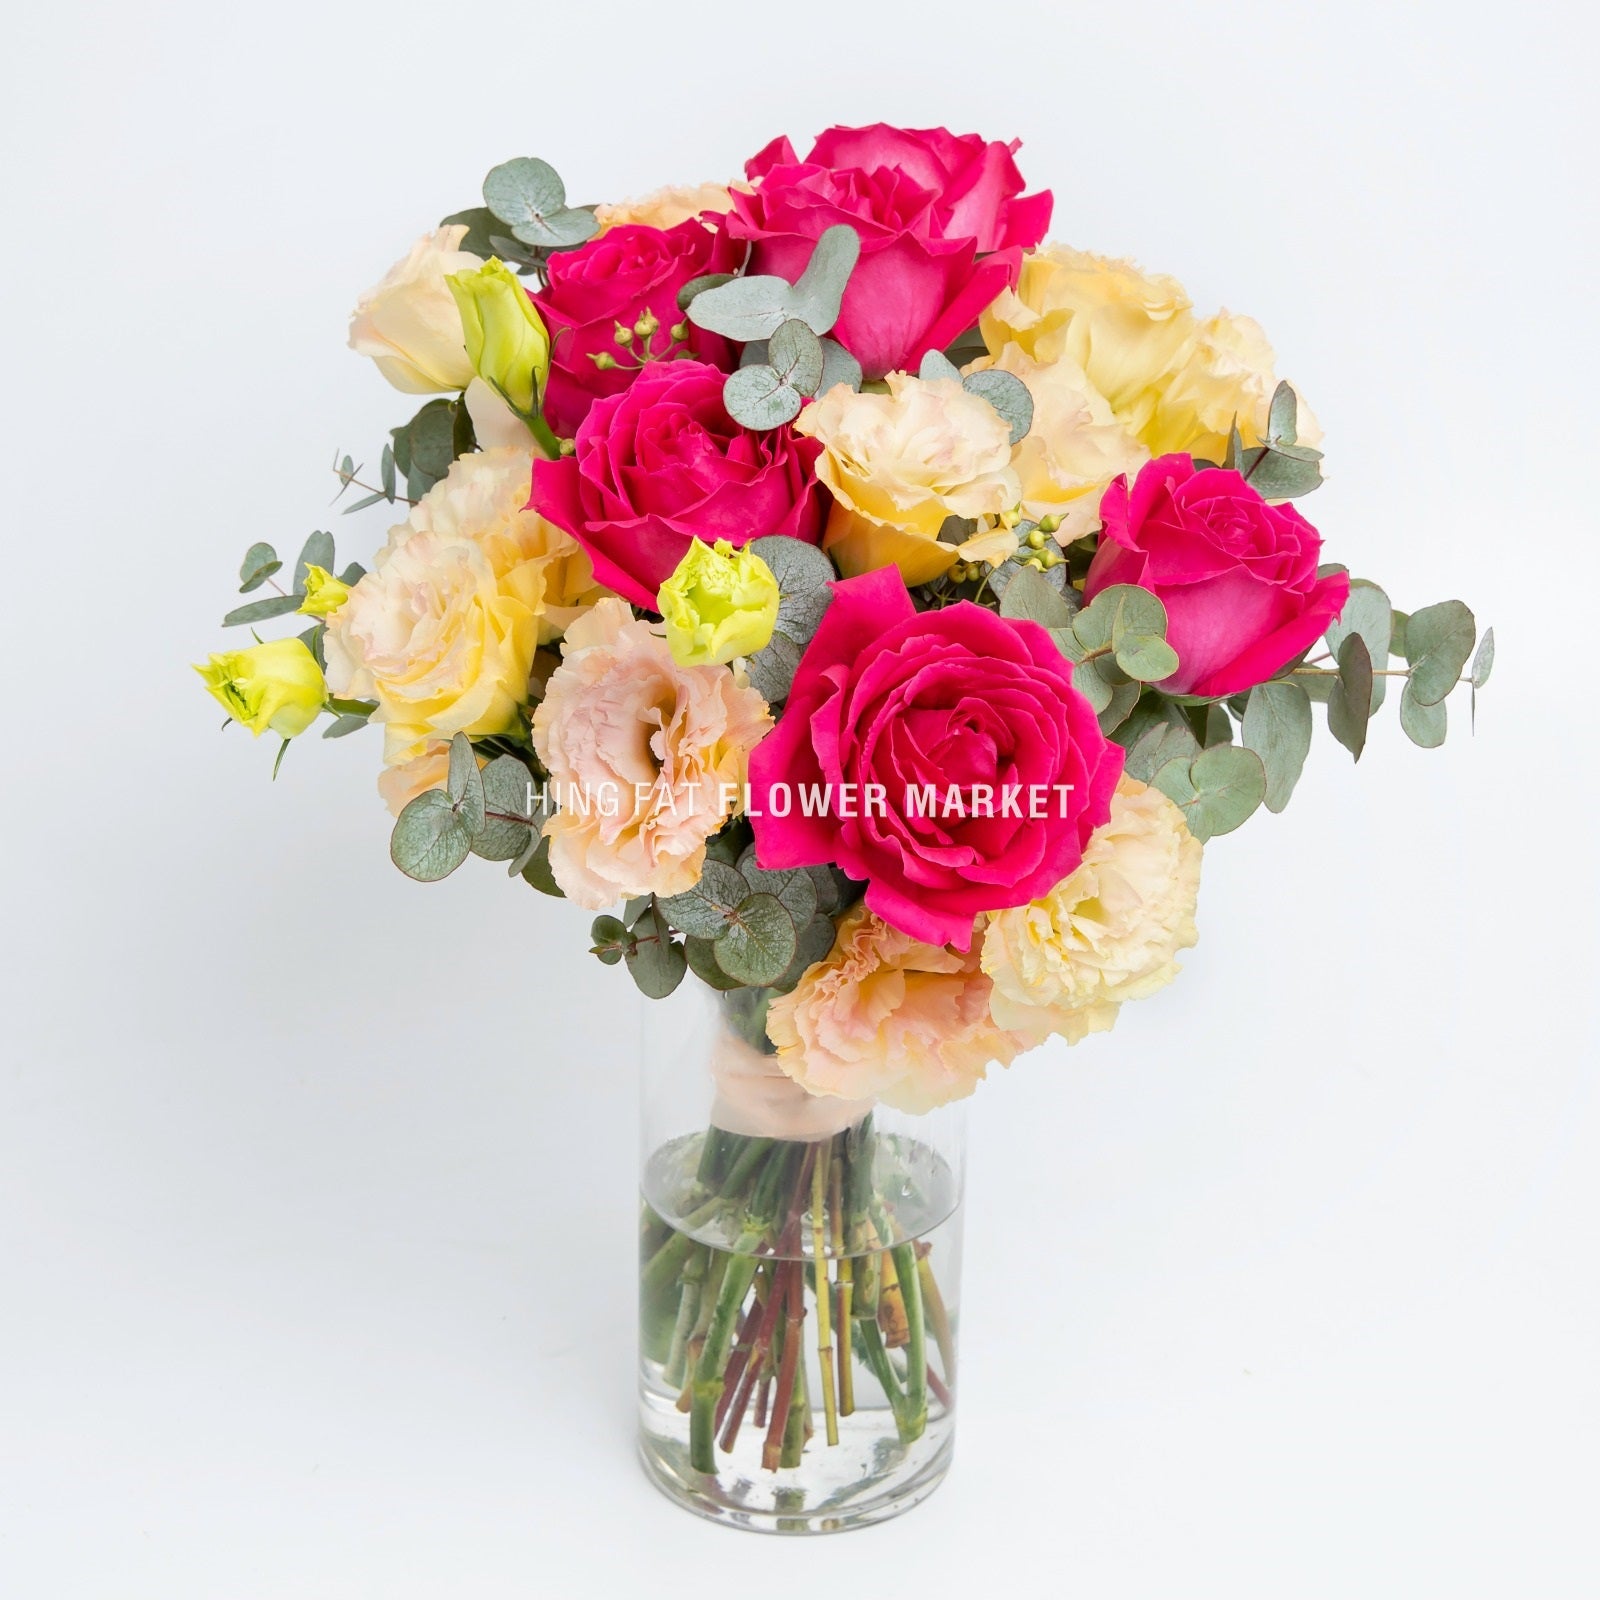 桃紅玫瑰桔梗連花瓶 Magenta roses & eustoma with vase